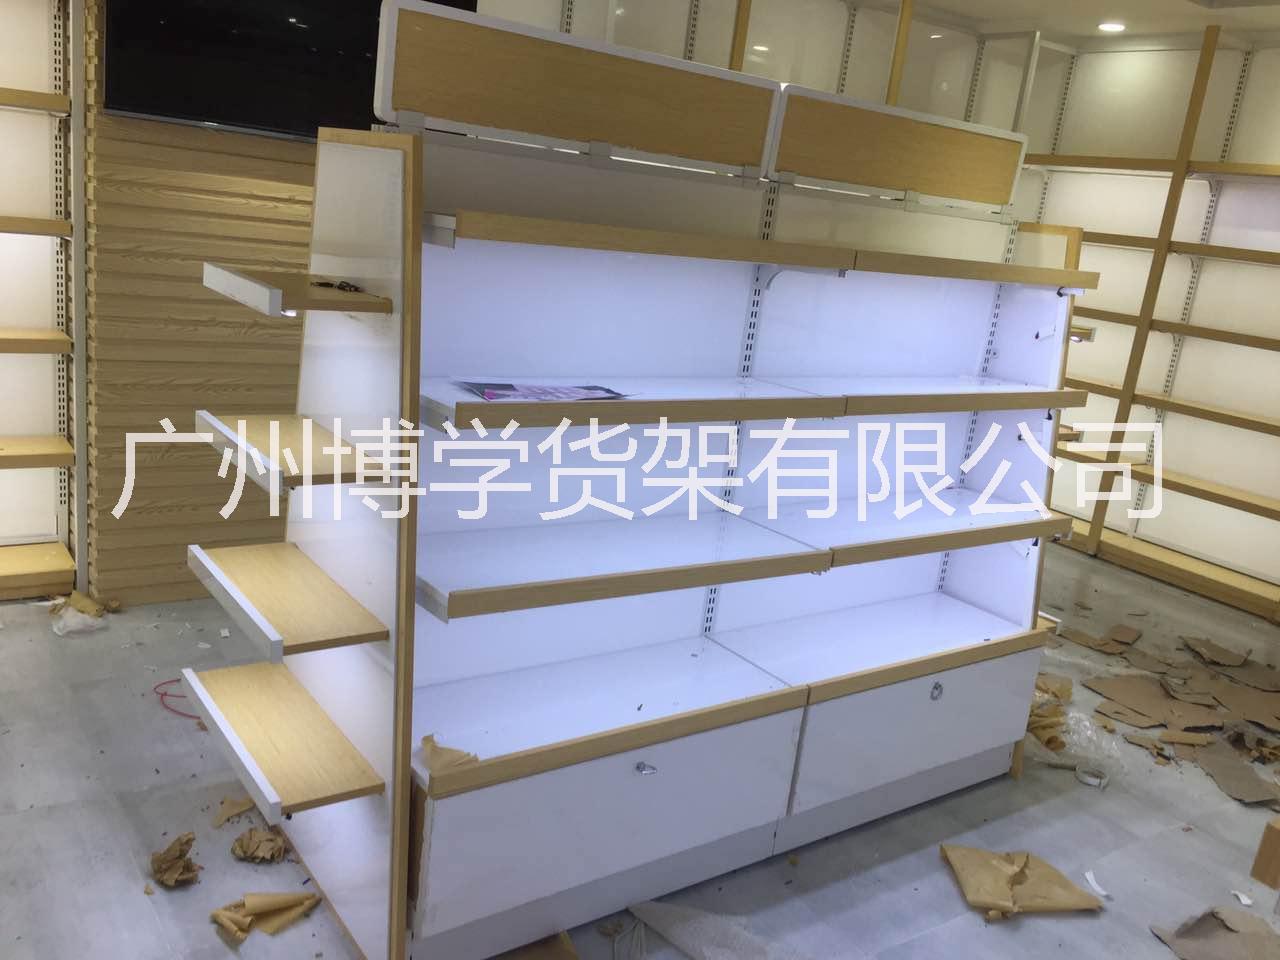 广州市化妆品展示柜 保养品烤漆柜 护肤厂家